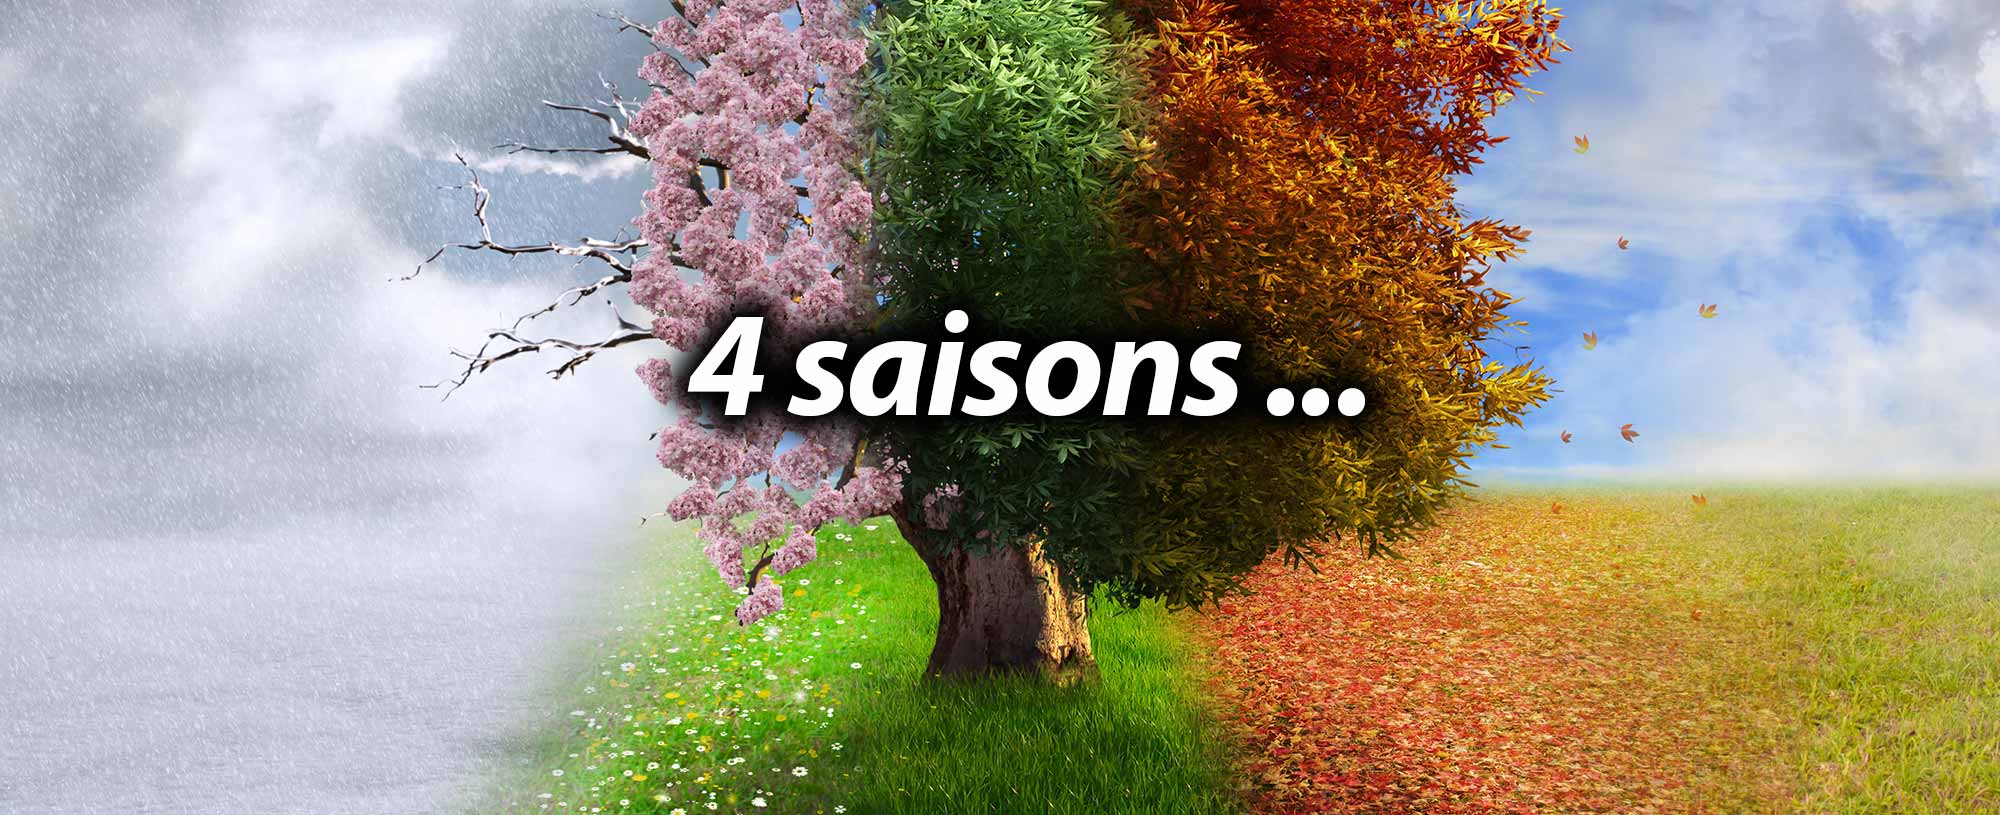 Les 4 saisons